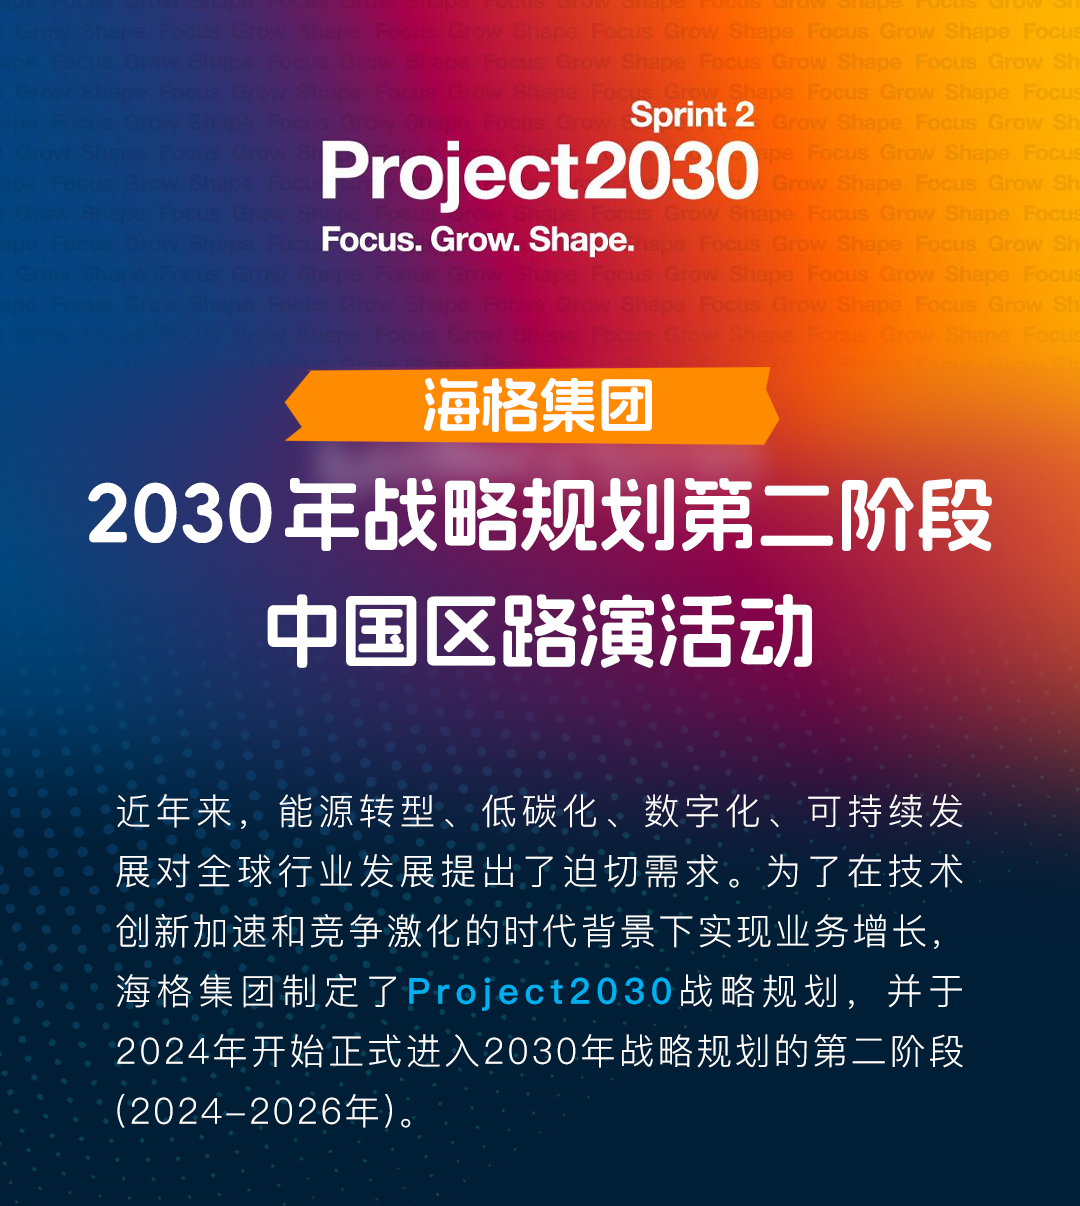 海格集团2030年战略规划第二阶段中国区路演活动，擘画电气世界未来！